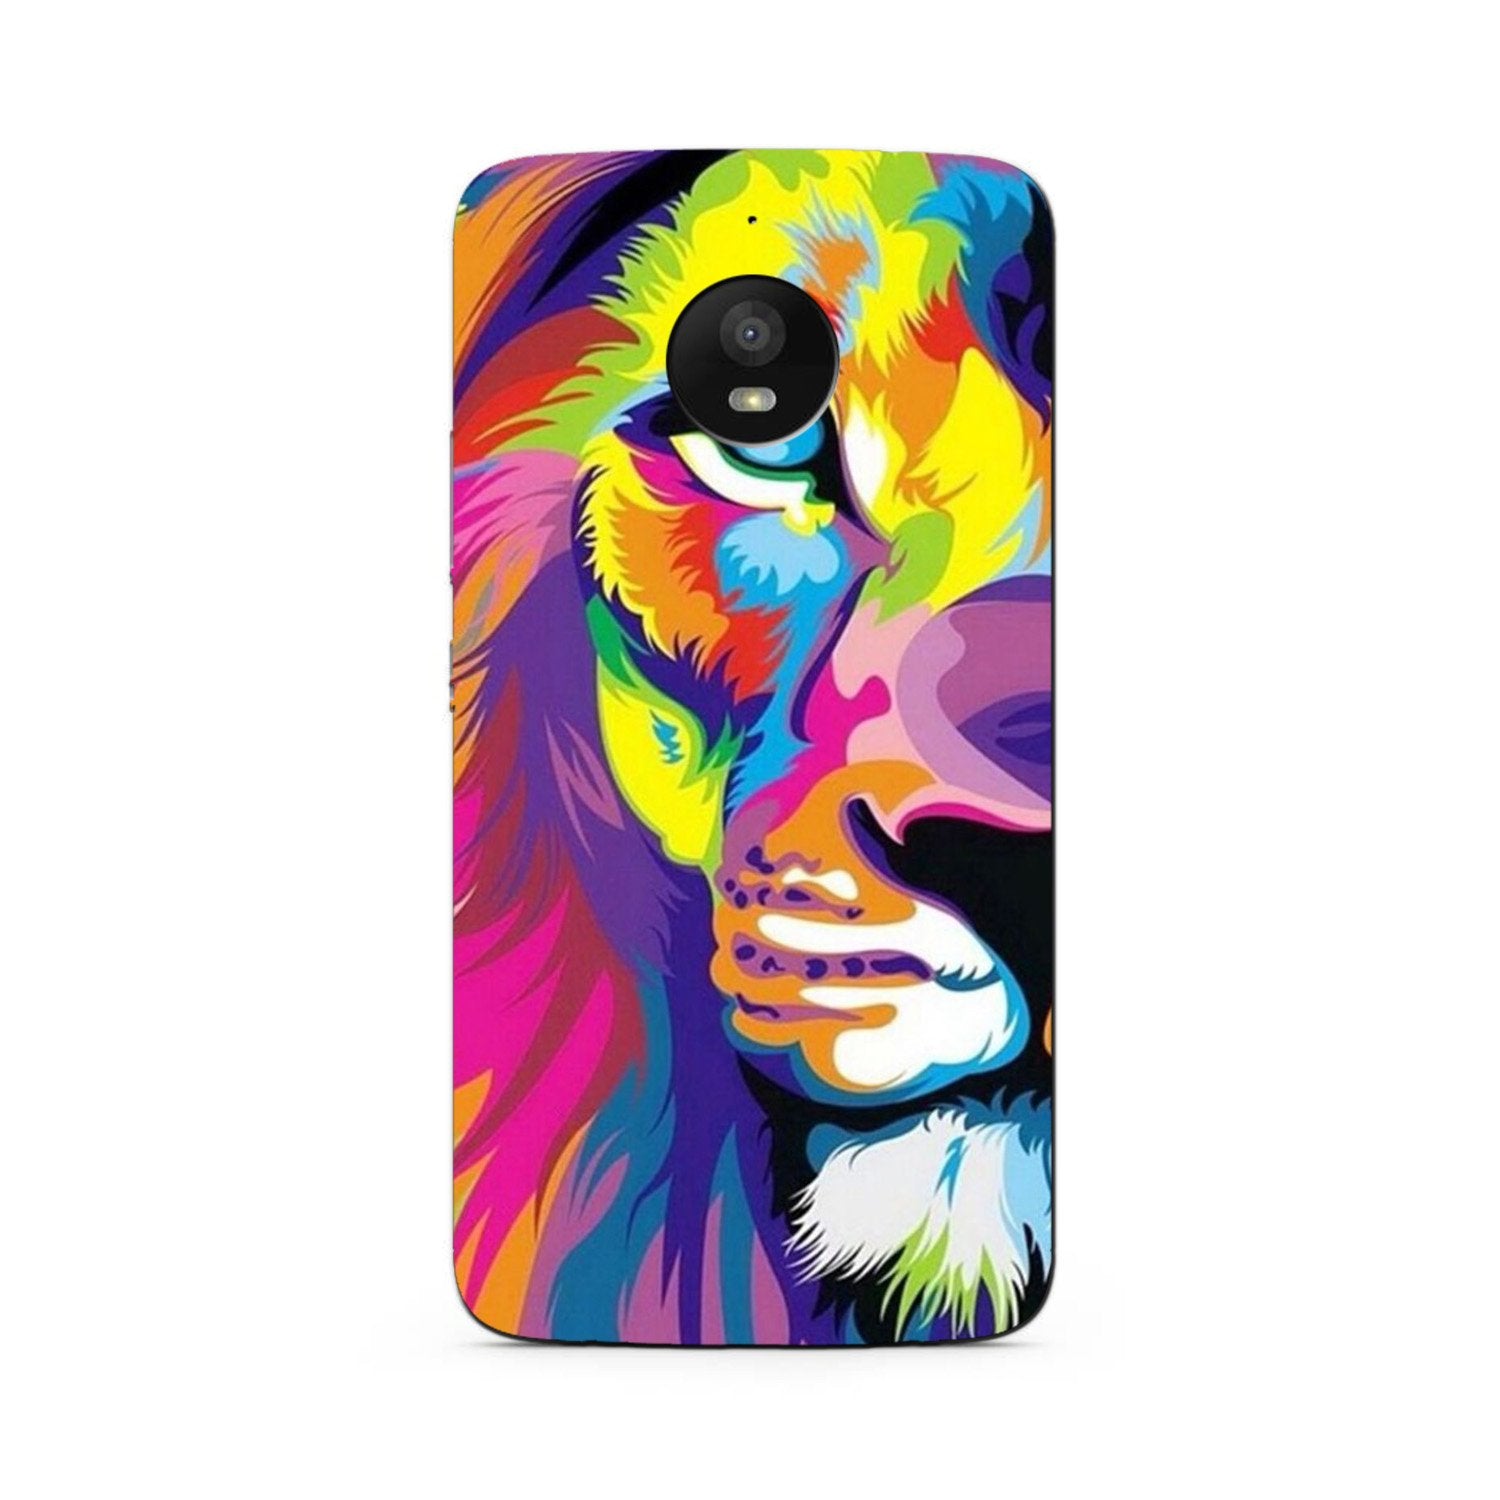 Colorful Lion Case for Moto G5s Plus(Design - 110)